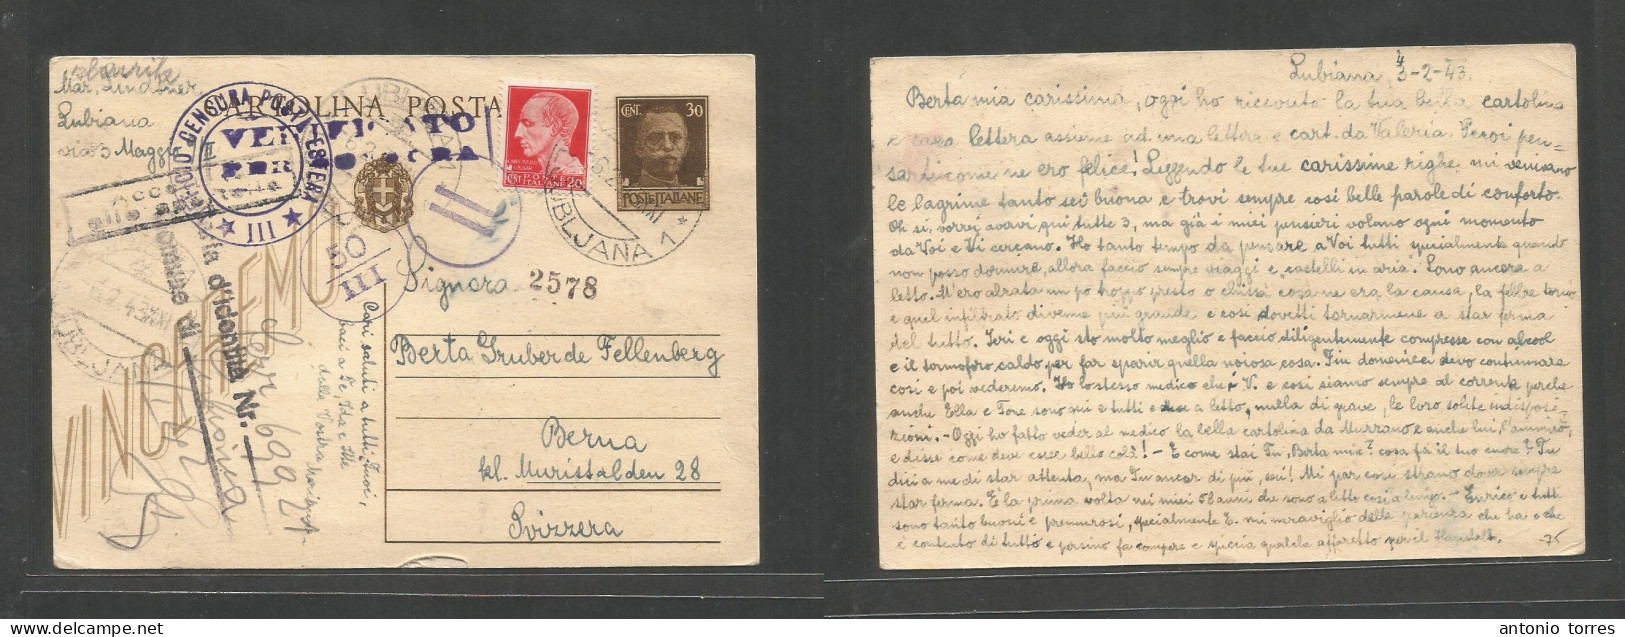 Slovenia. 1943 (6 Febr) Italy Postal Adm, Ljubljana - Bern, Switzerland. 30c Brown Stat Card + 20c Adtl, Tied Cds + Quin - Slowenien